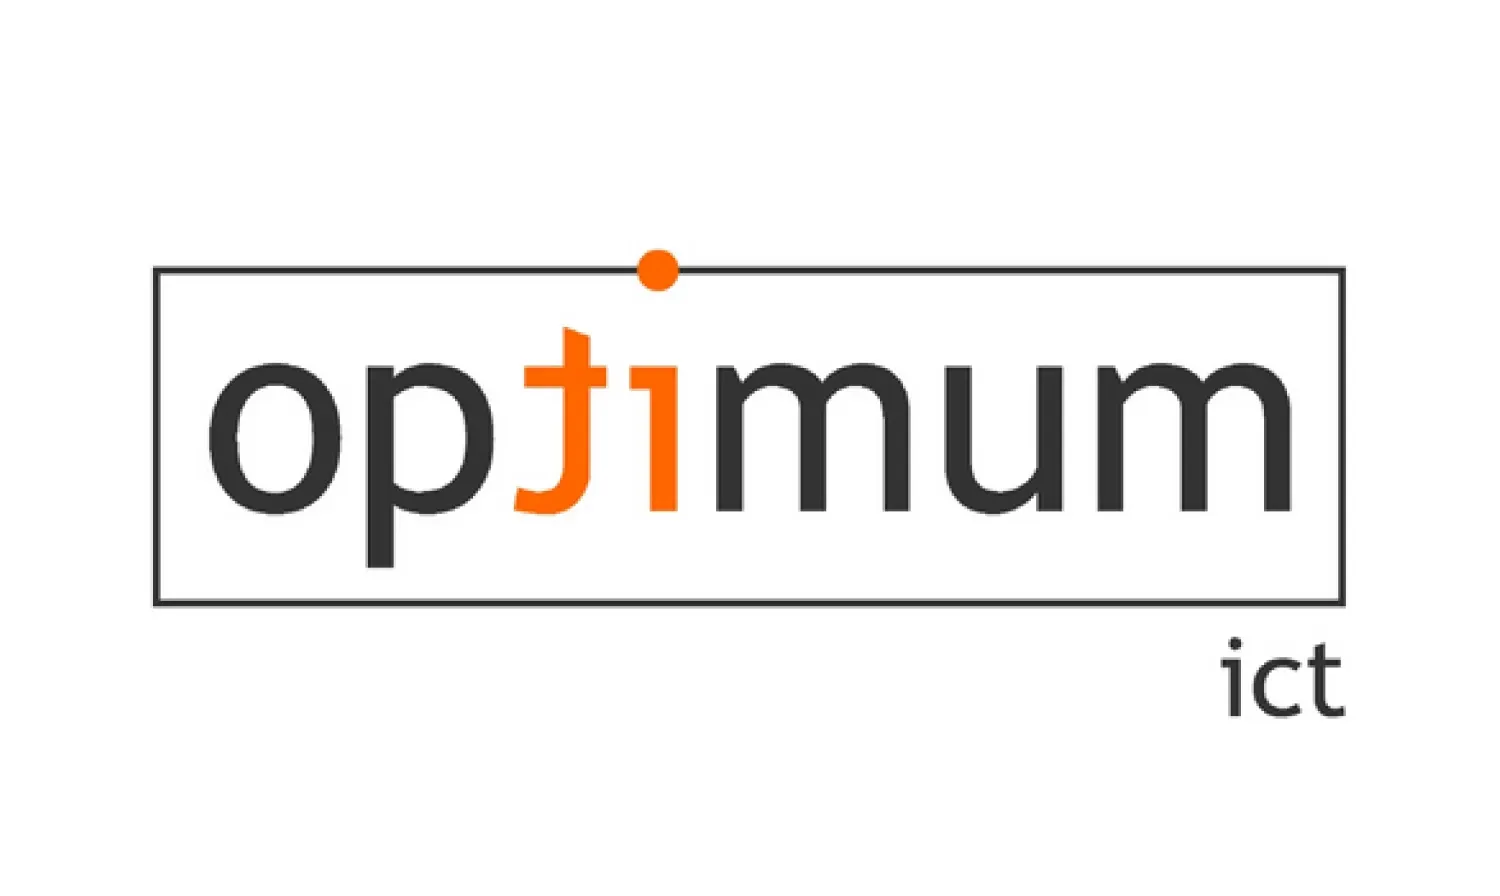 optimum logo